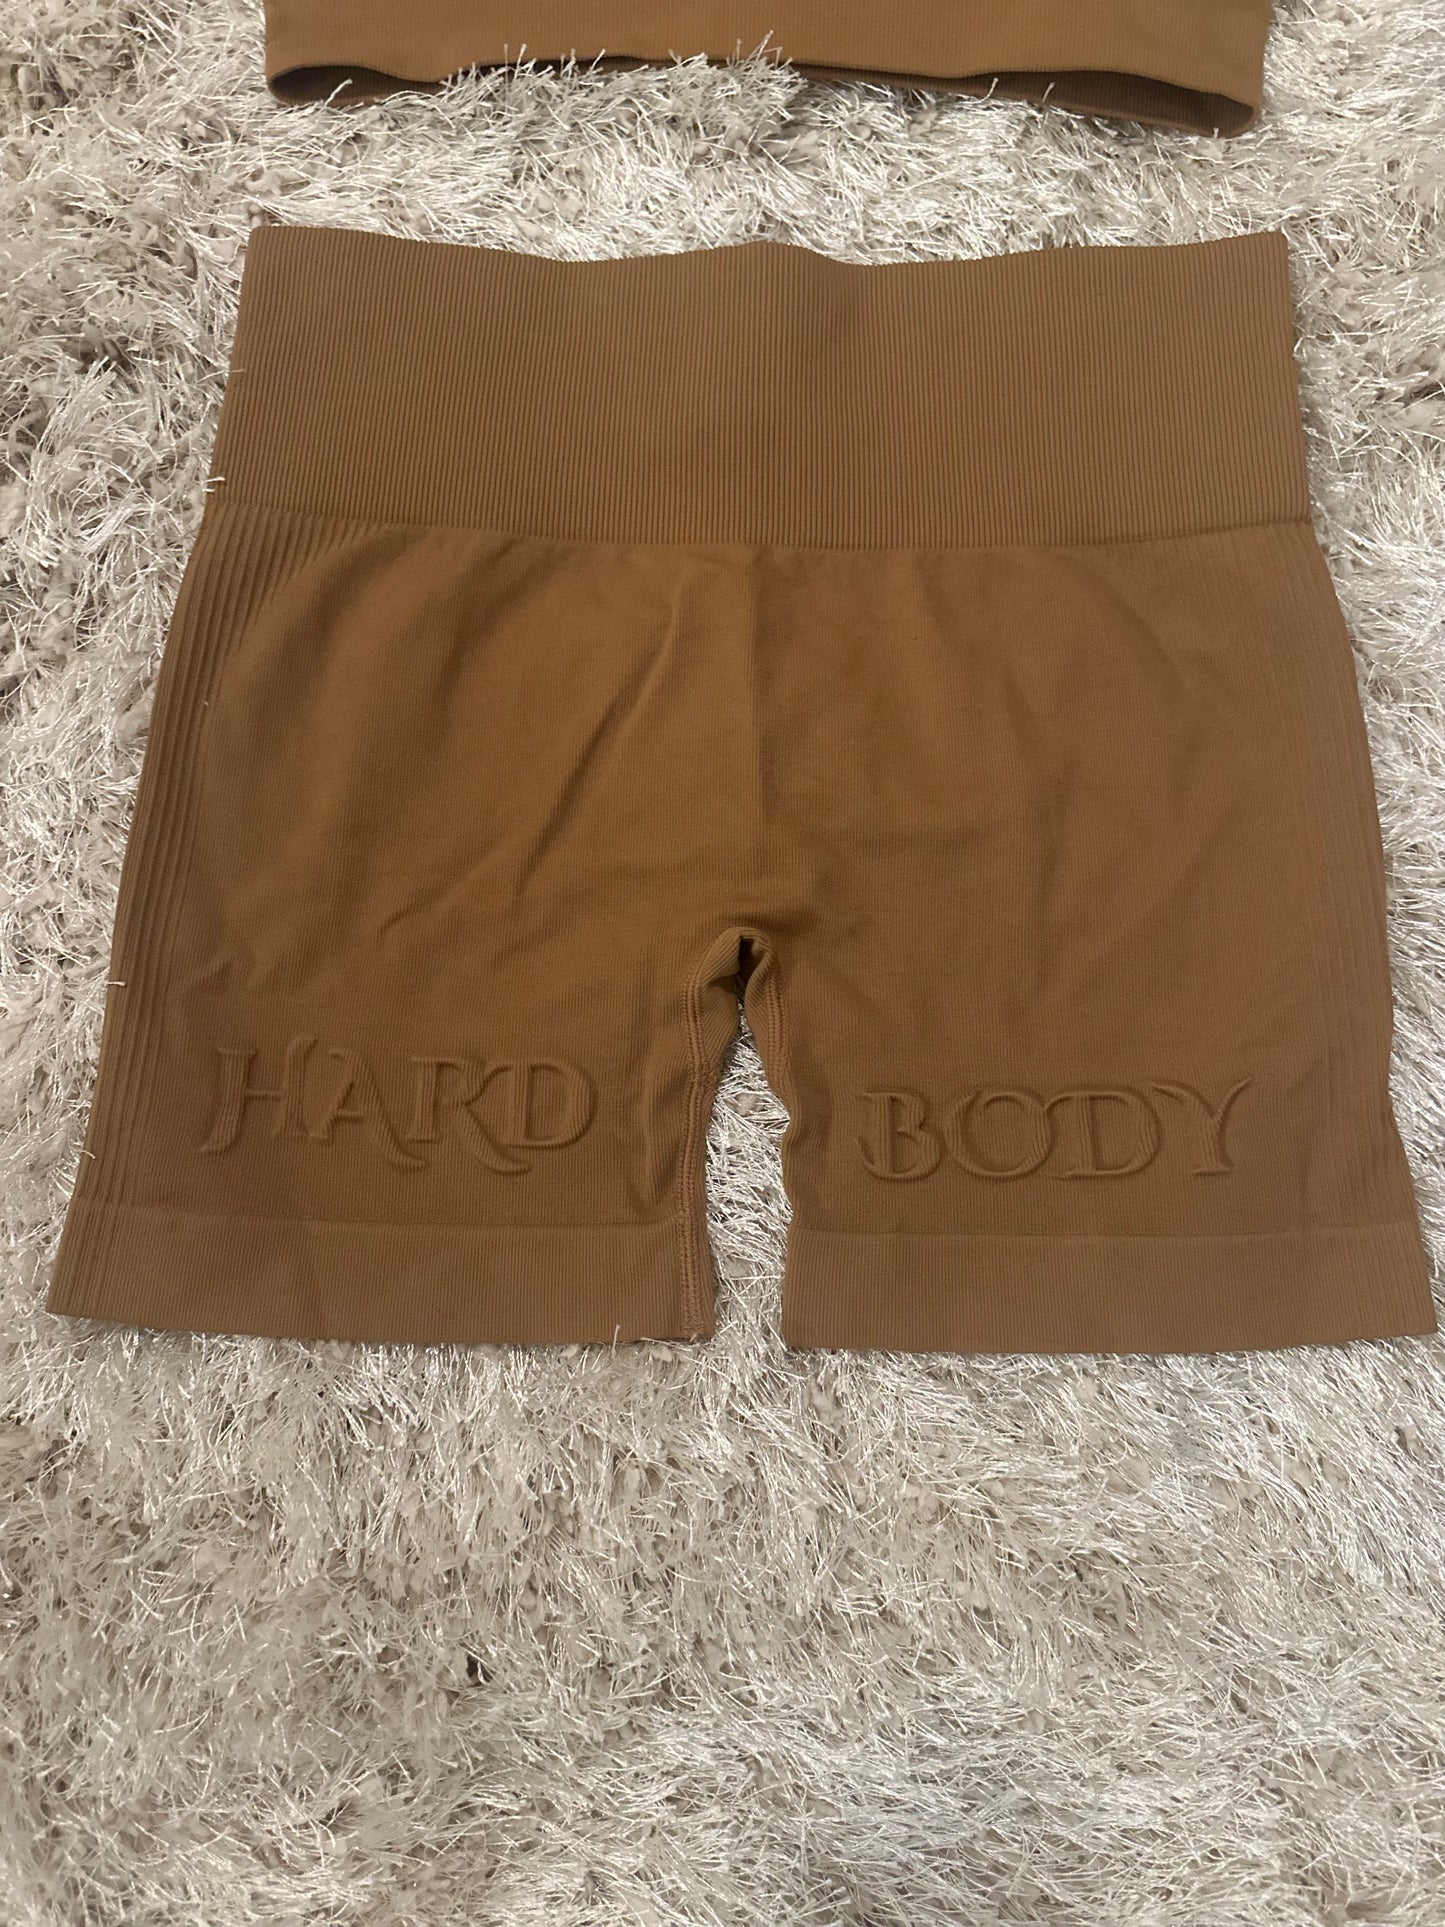 Hard Body Shorts Set